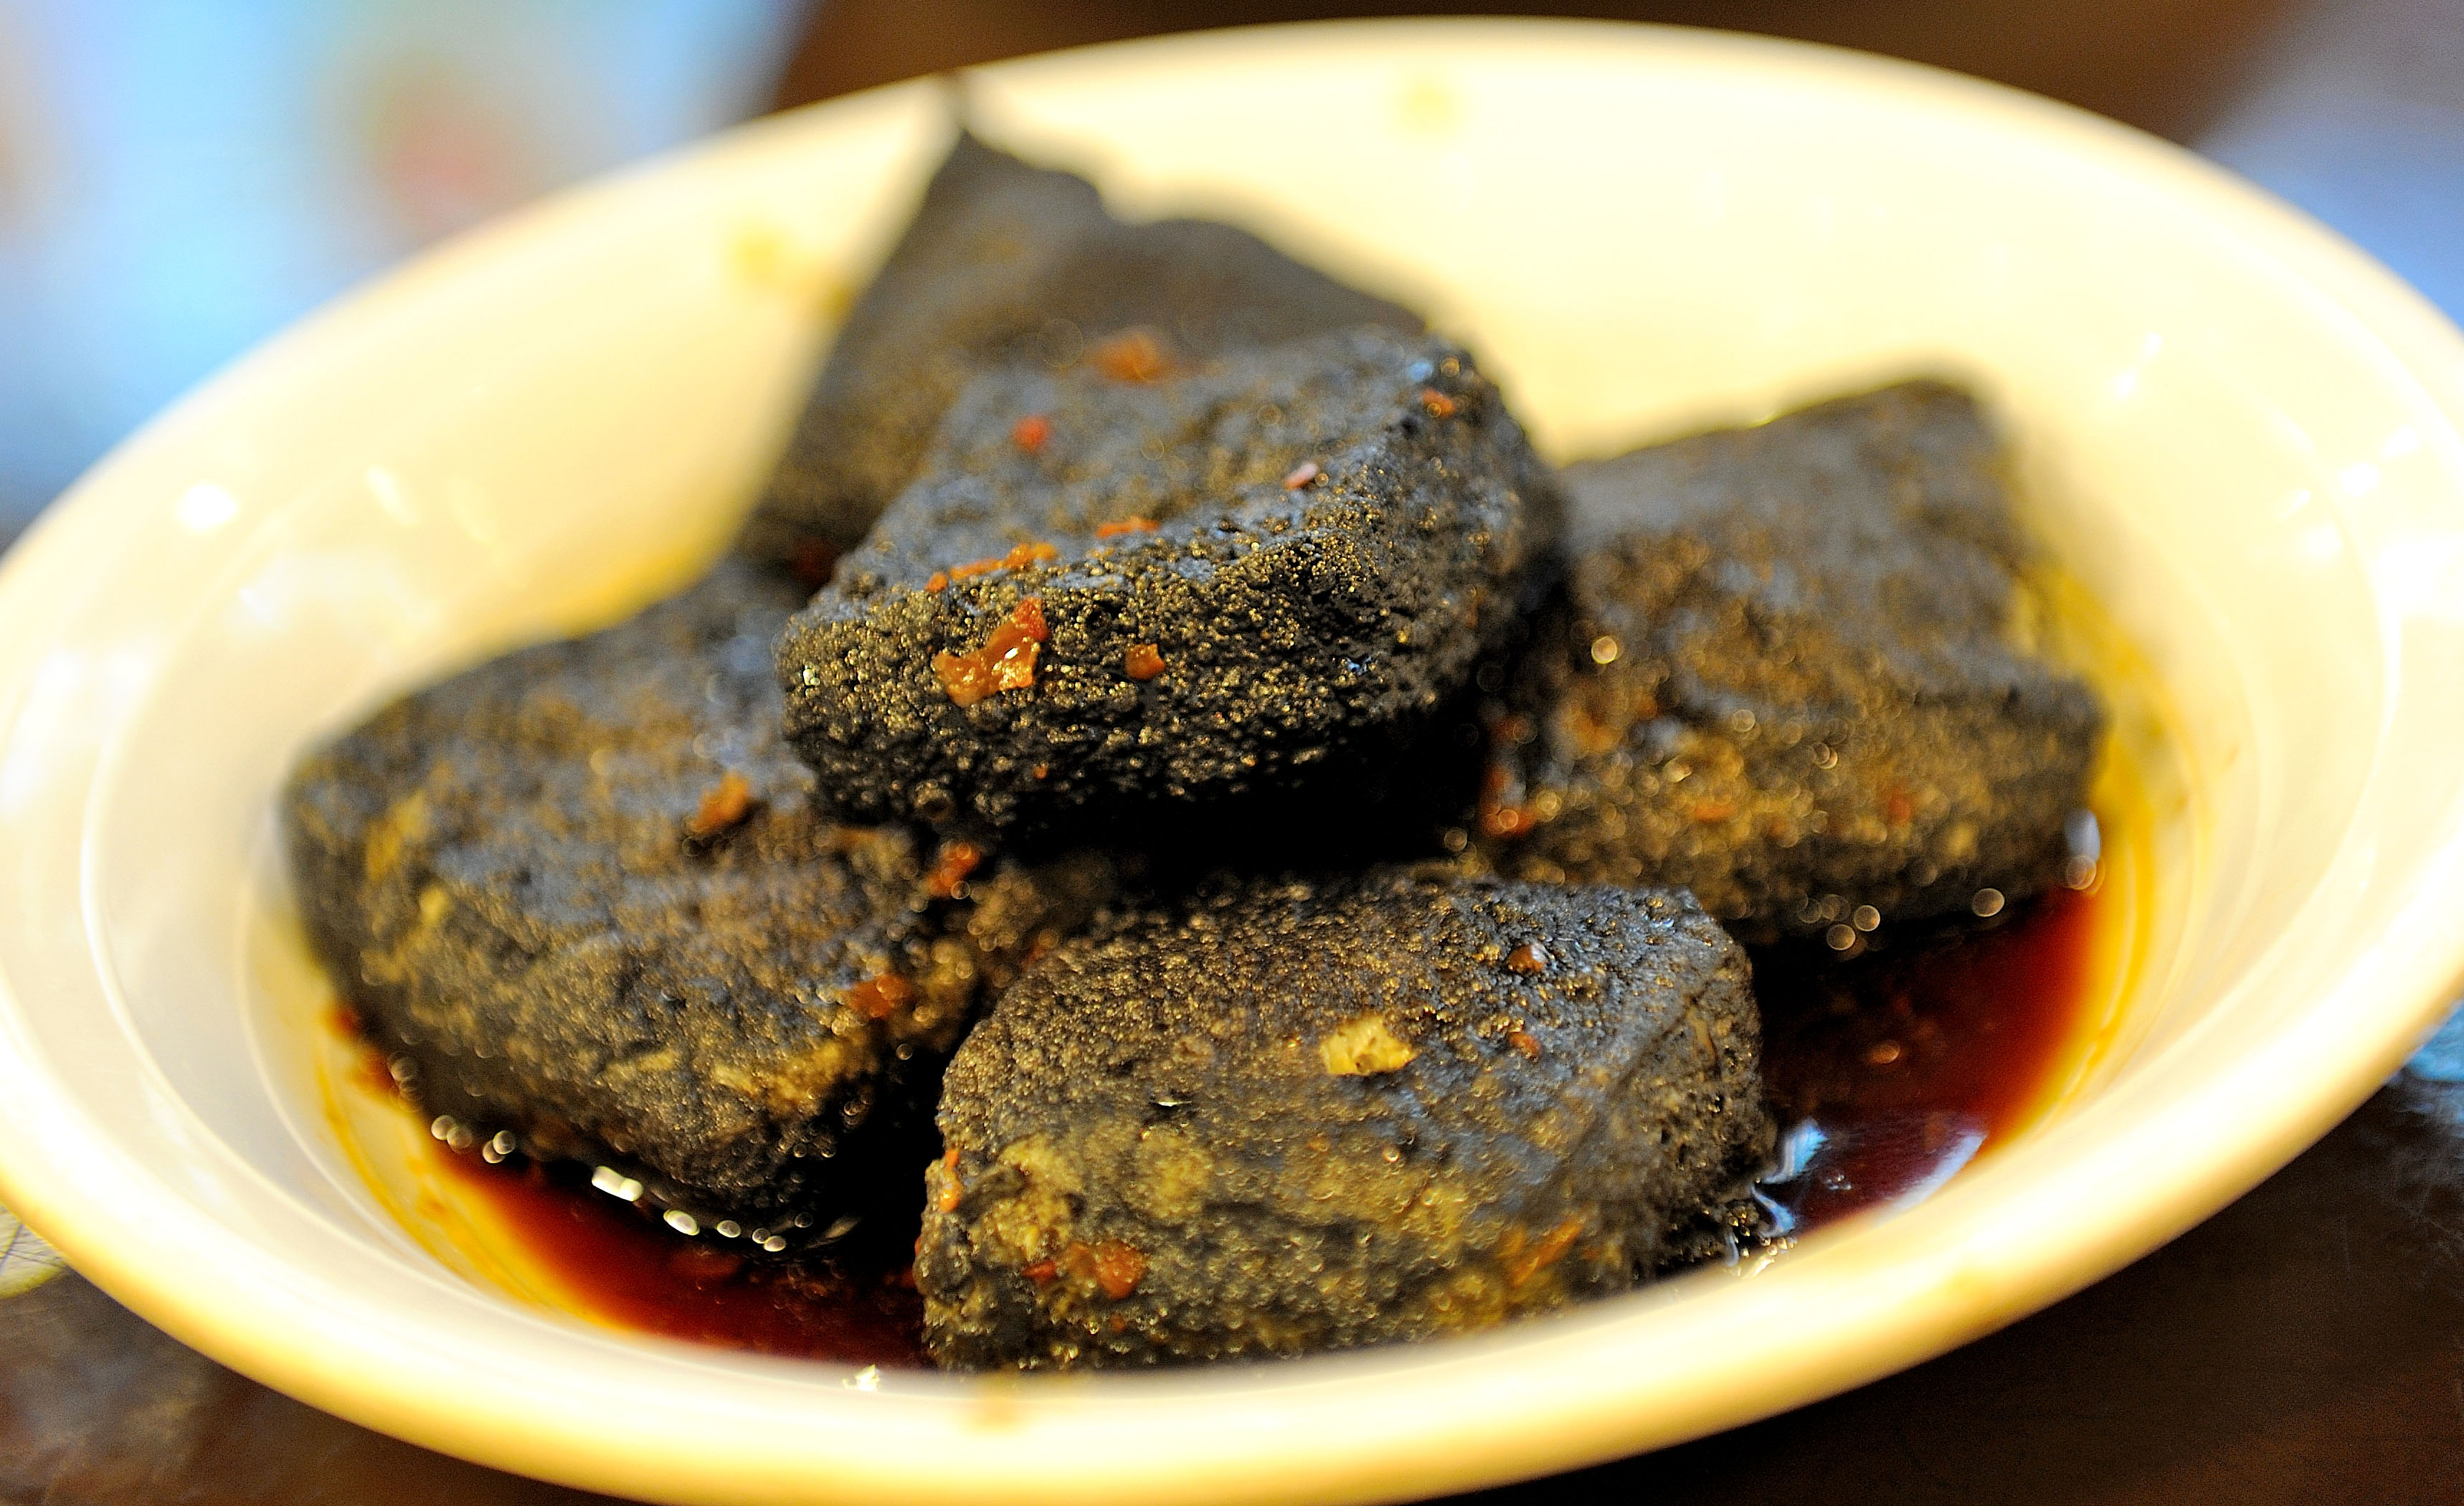 臭豆腐当然是首当其冲,长沙最著名的小吃,颜色墨黑,外焦里嫩,鲜而香辣